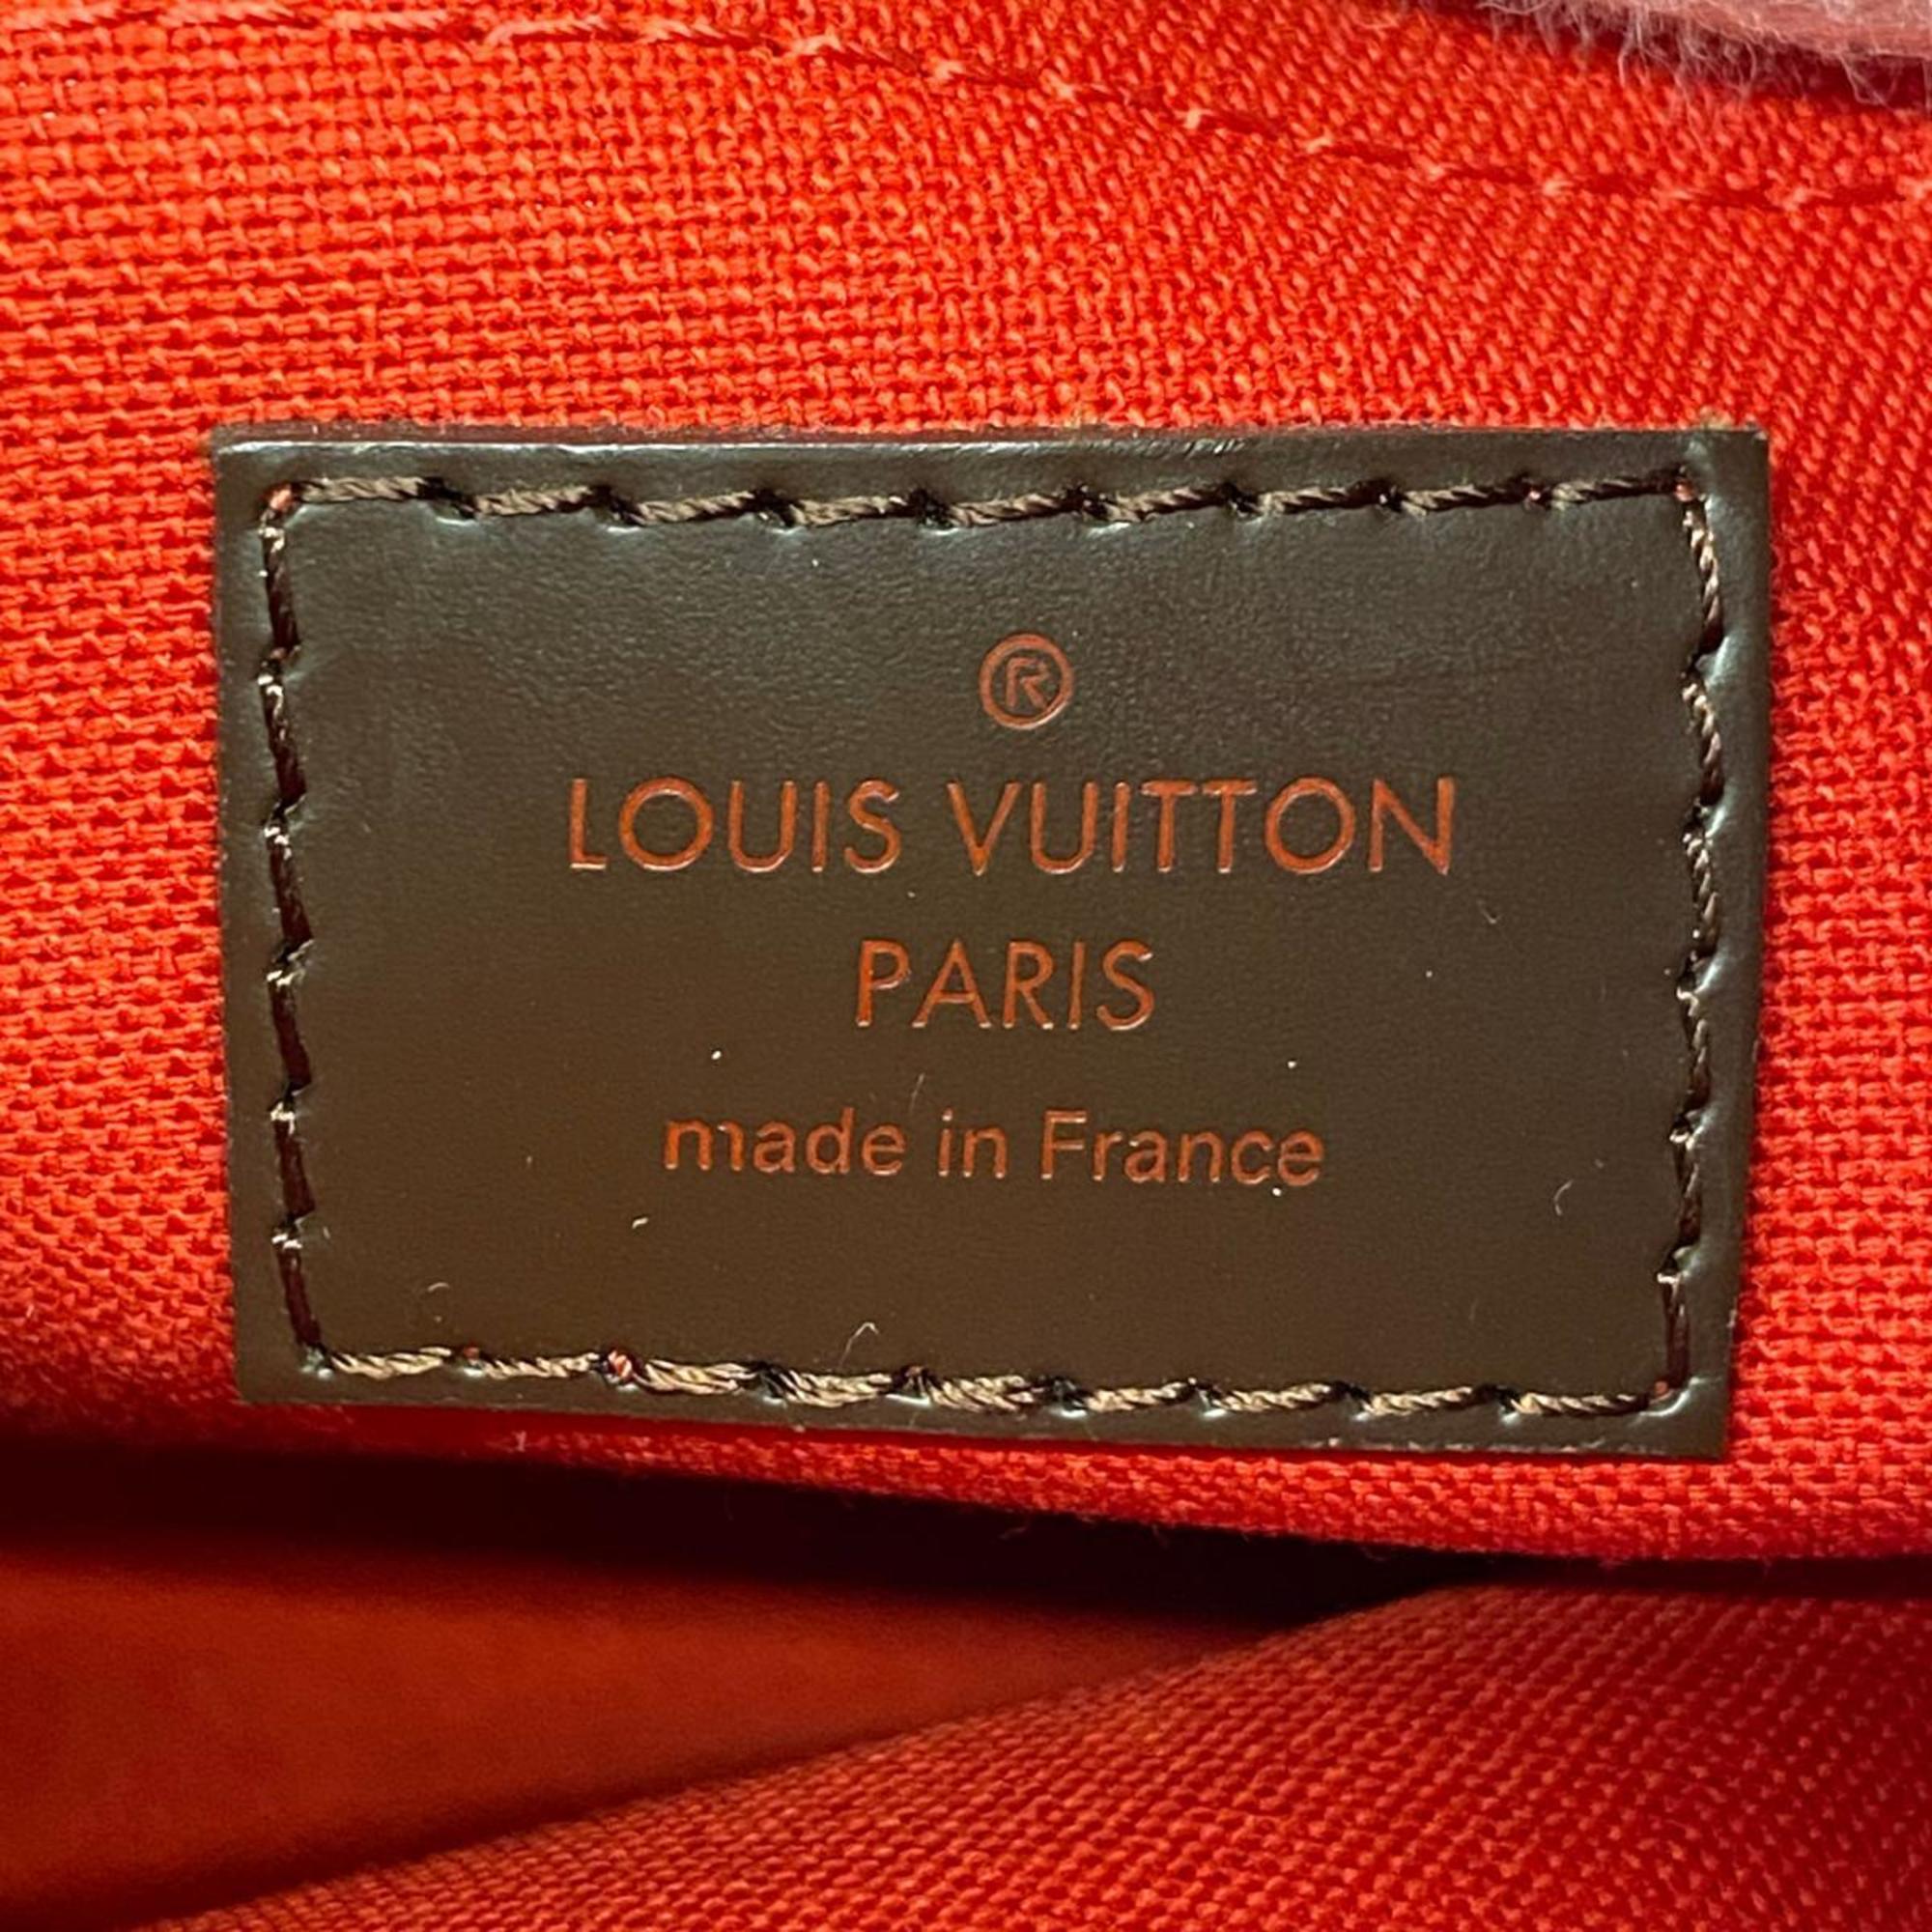 ルイ・ヴィトン(Louis Vuitton) ルイ・ヴィトン ショルダーバッグ ダミエ テムズGM N48181 エベヌレディース